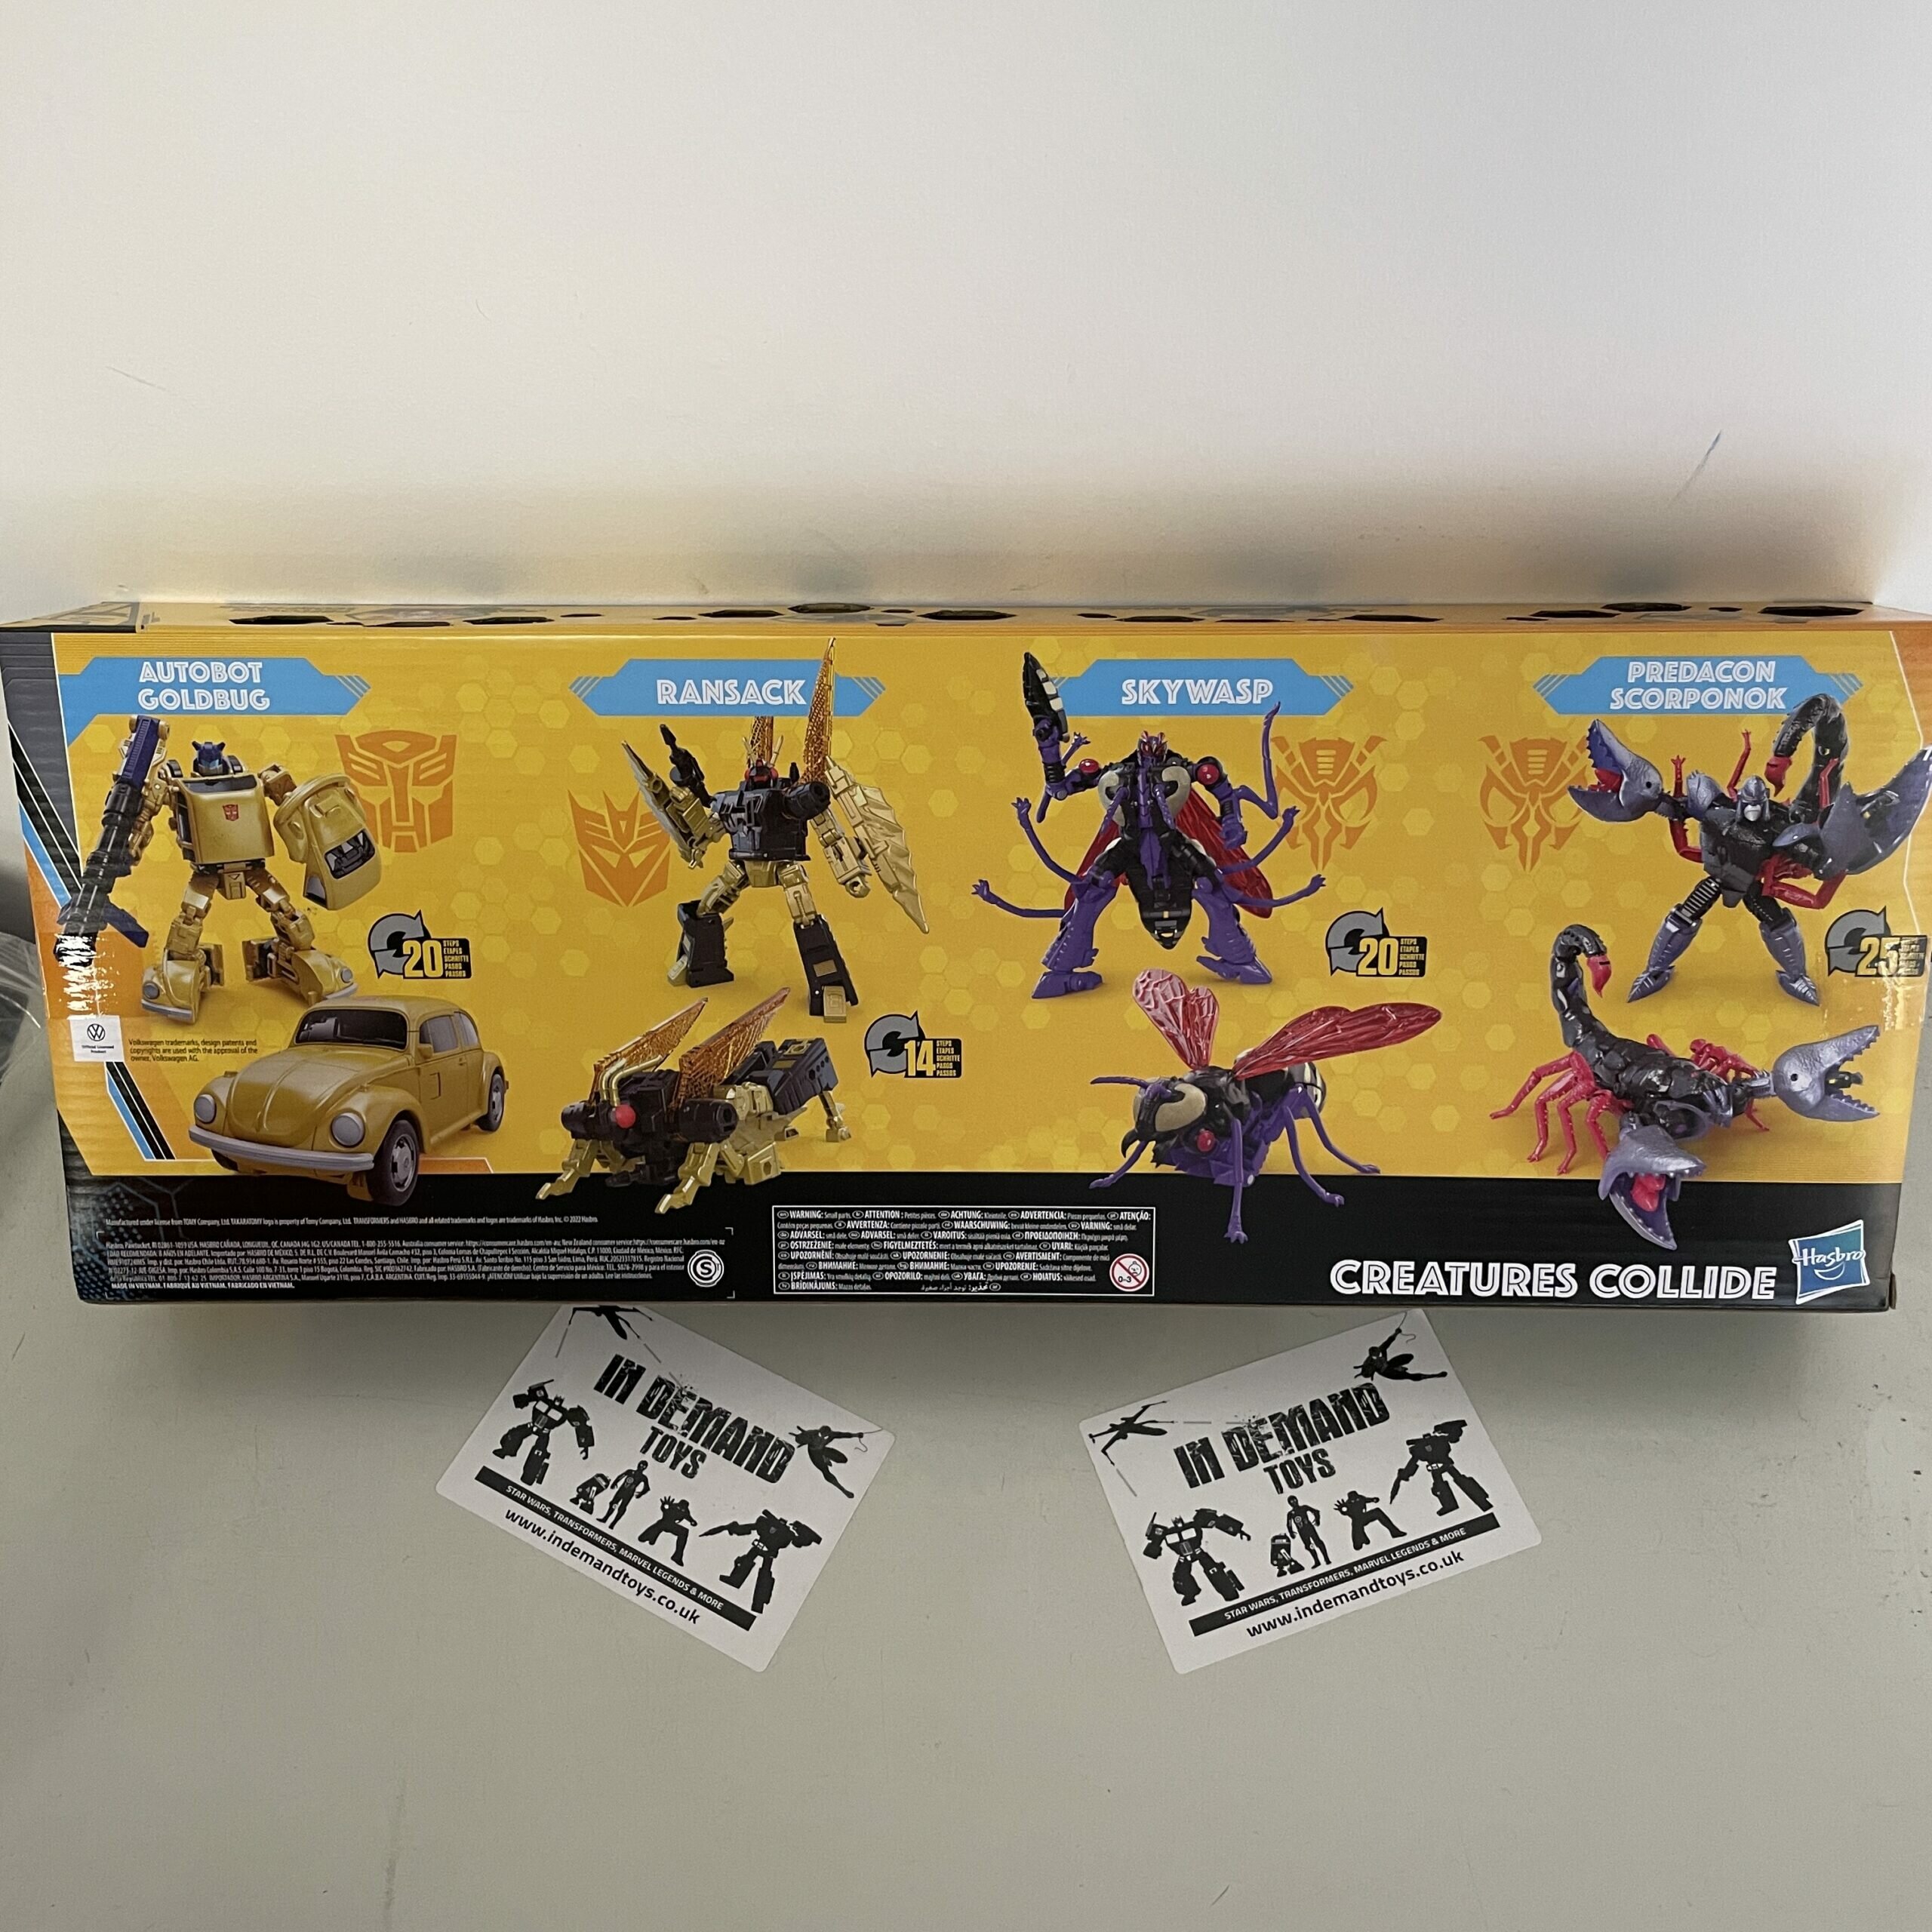 Transformers-Buzzworhty-Bumblebee-Creatures-Collide-4-pack-02.jpg.f3376ea3b3c97e3040d2e479e31be8f9.jpg